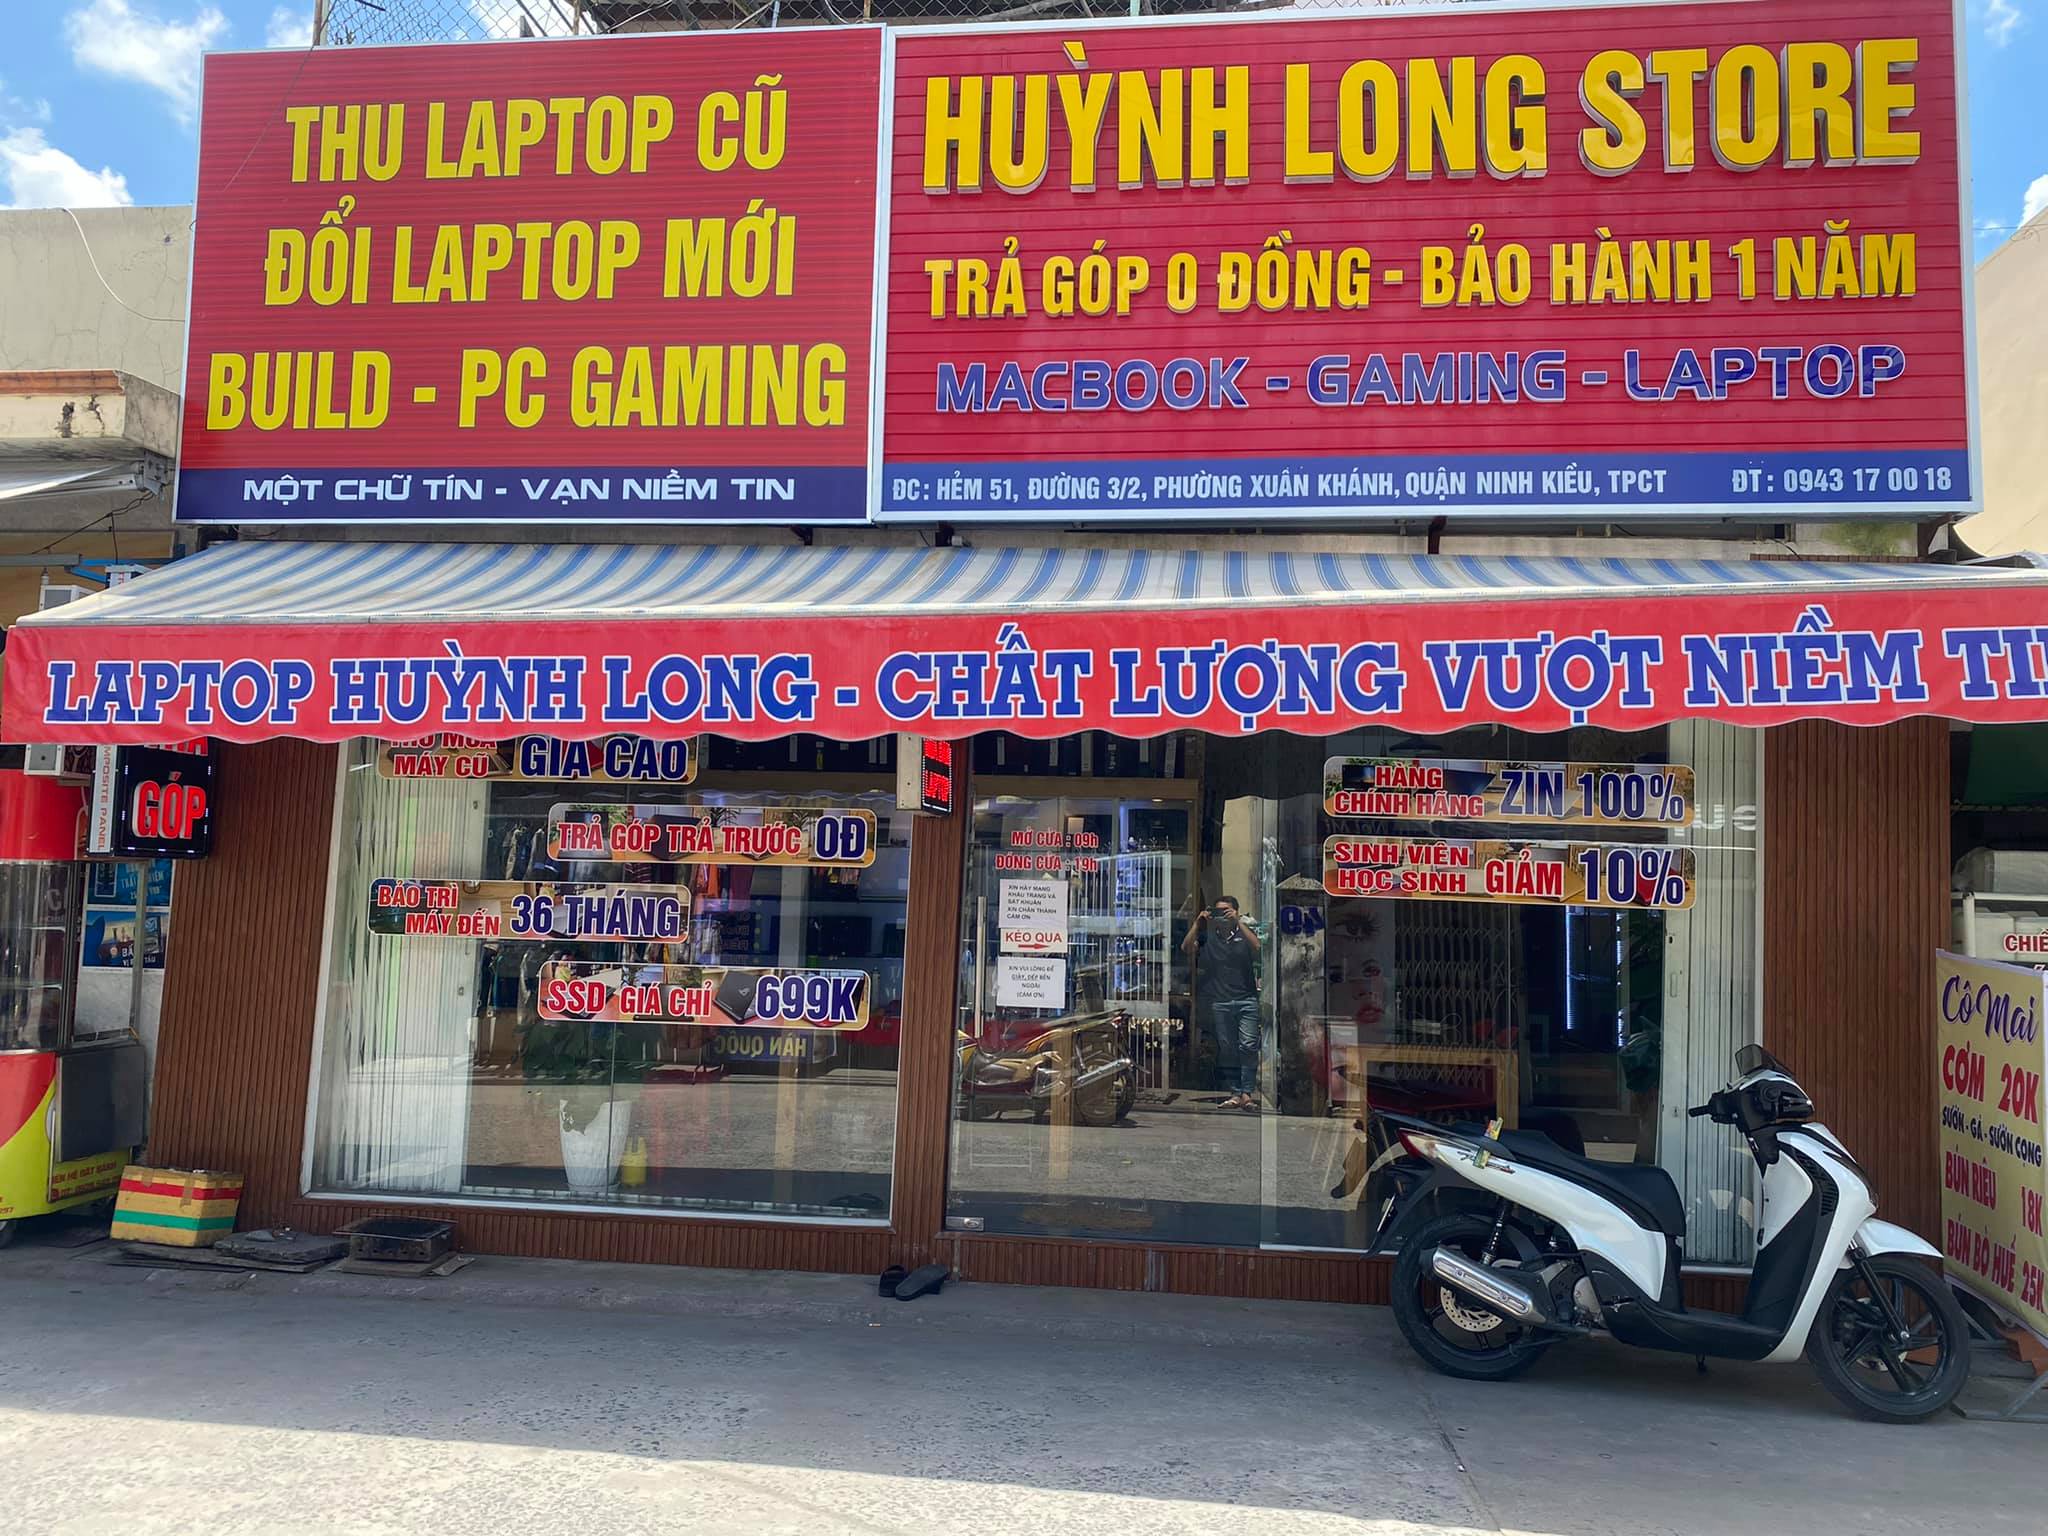 LapTop Cũ Cần Thơ - Huỳnh Long Store ảnh 1